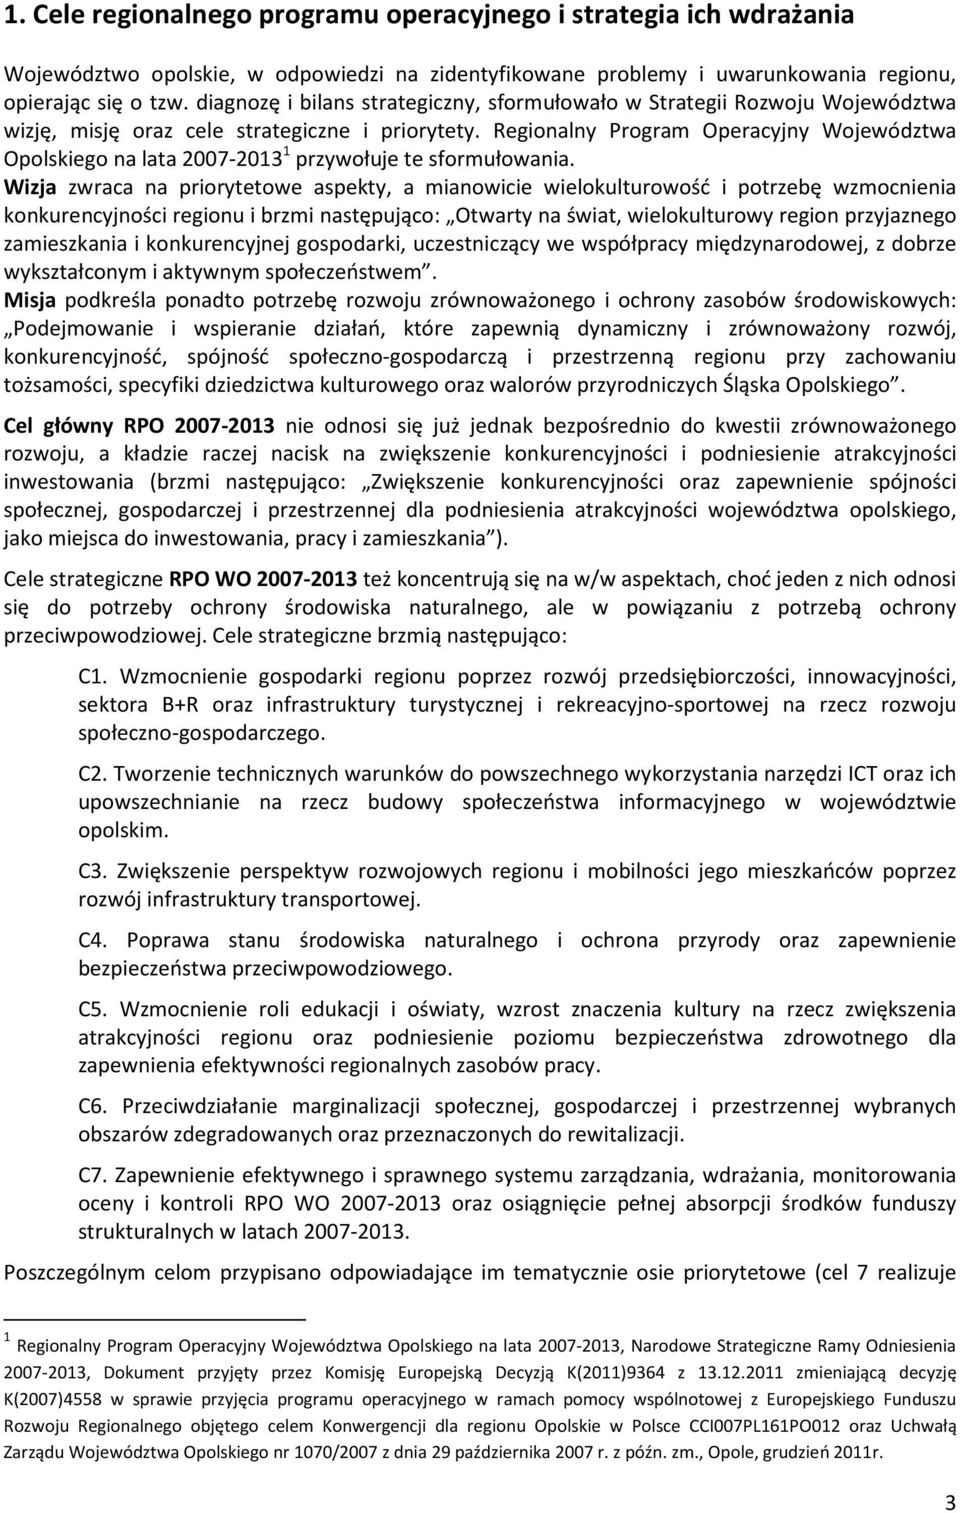 Regionalny Program Operacyjny Województwa Opolskiego na lata 2007-2013 1 przywołuje te sformułowania.